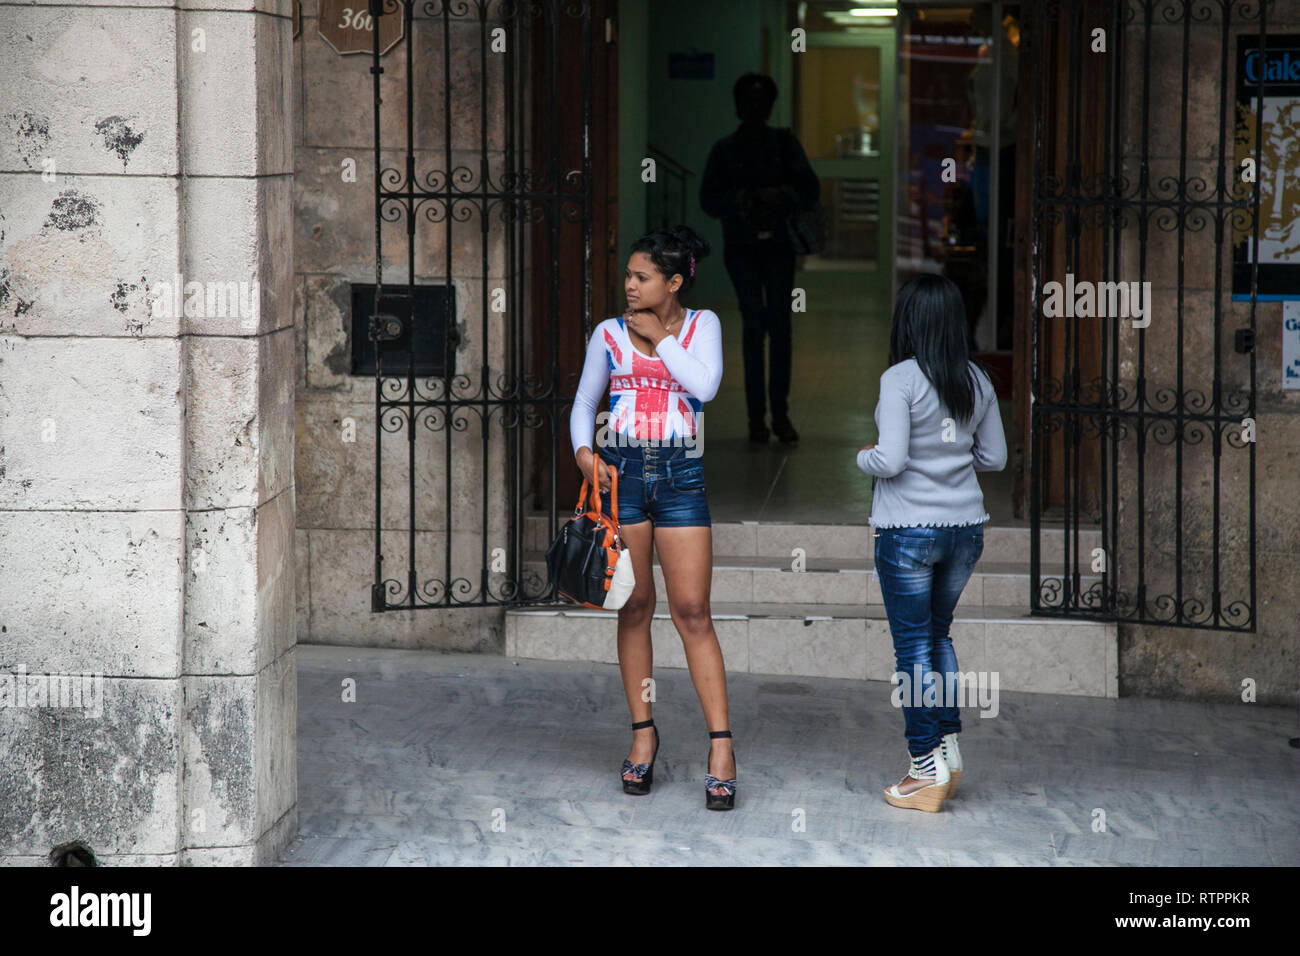 L'Avana, Cuba - 19 Gennaio 2013: una vista delle strade della città con il popolo cubano. Due giovani donne in attesa in strada. Foto Stock